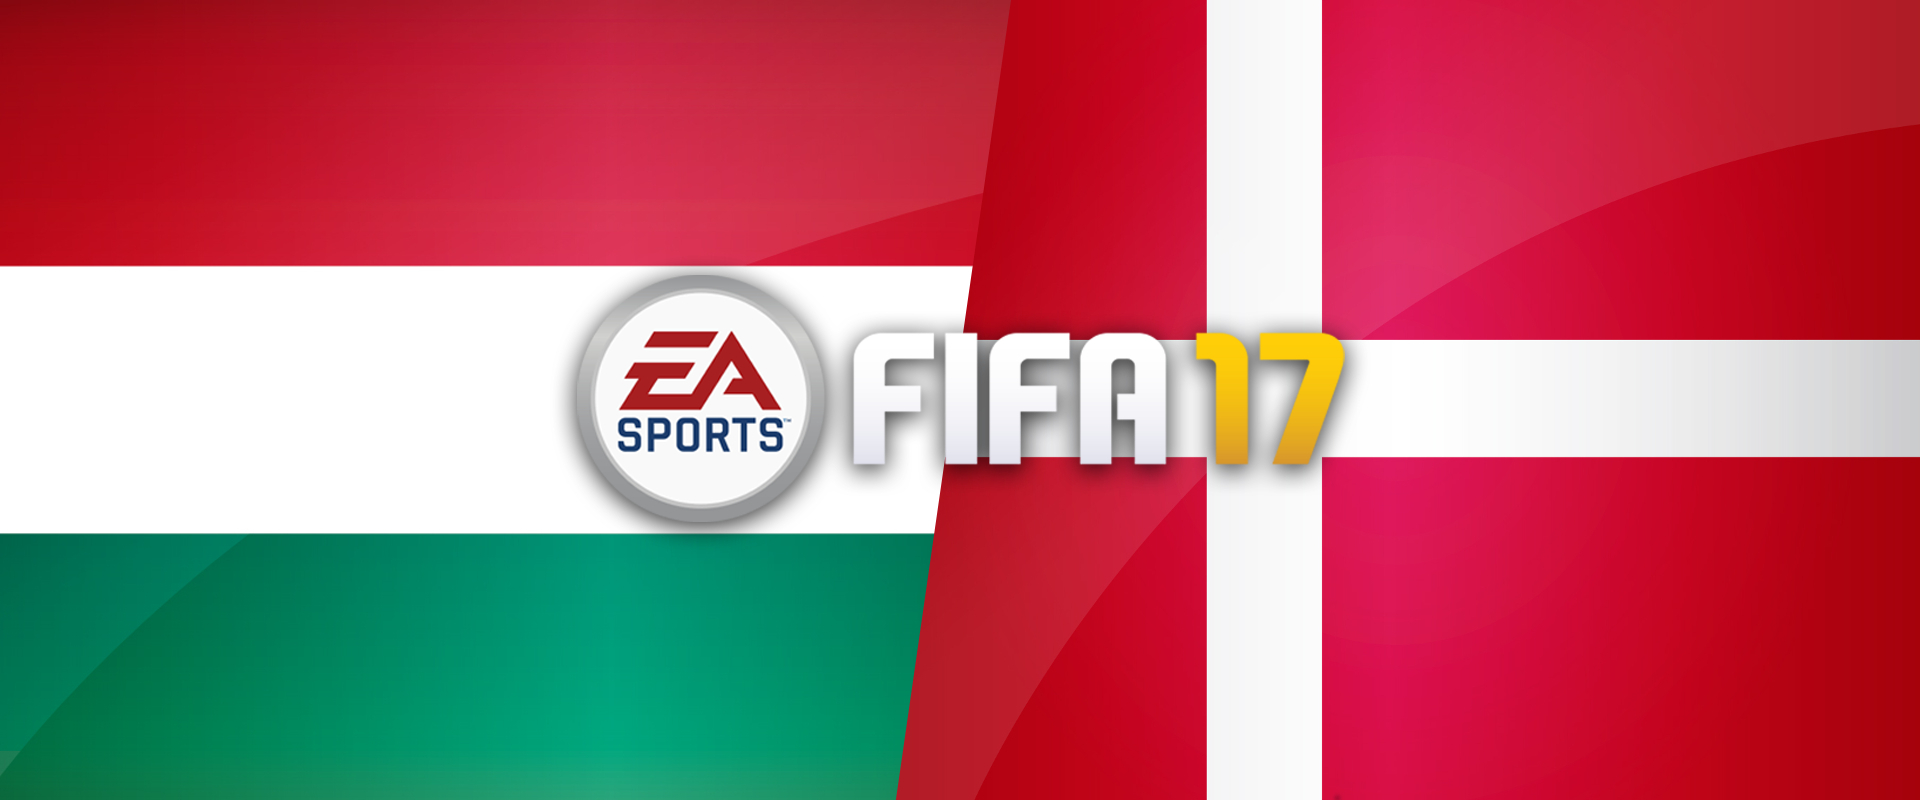 Eddigi legnehezebb meccse következik a magyar FIFA 17 válogatottnak